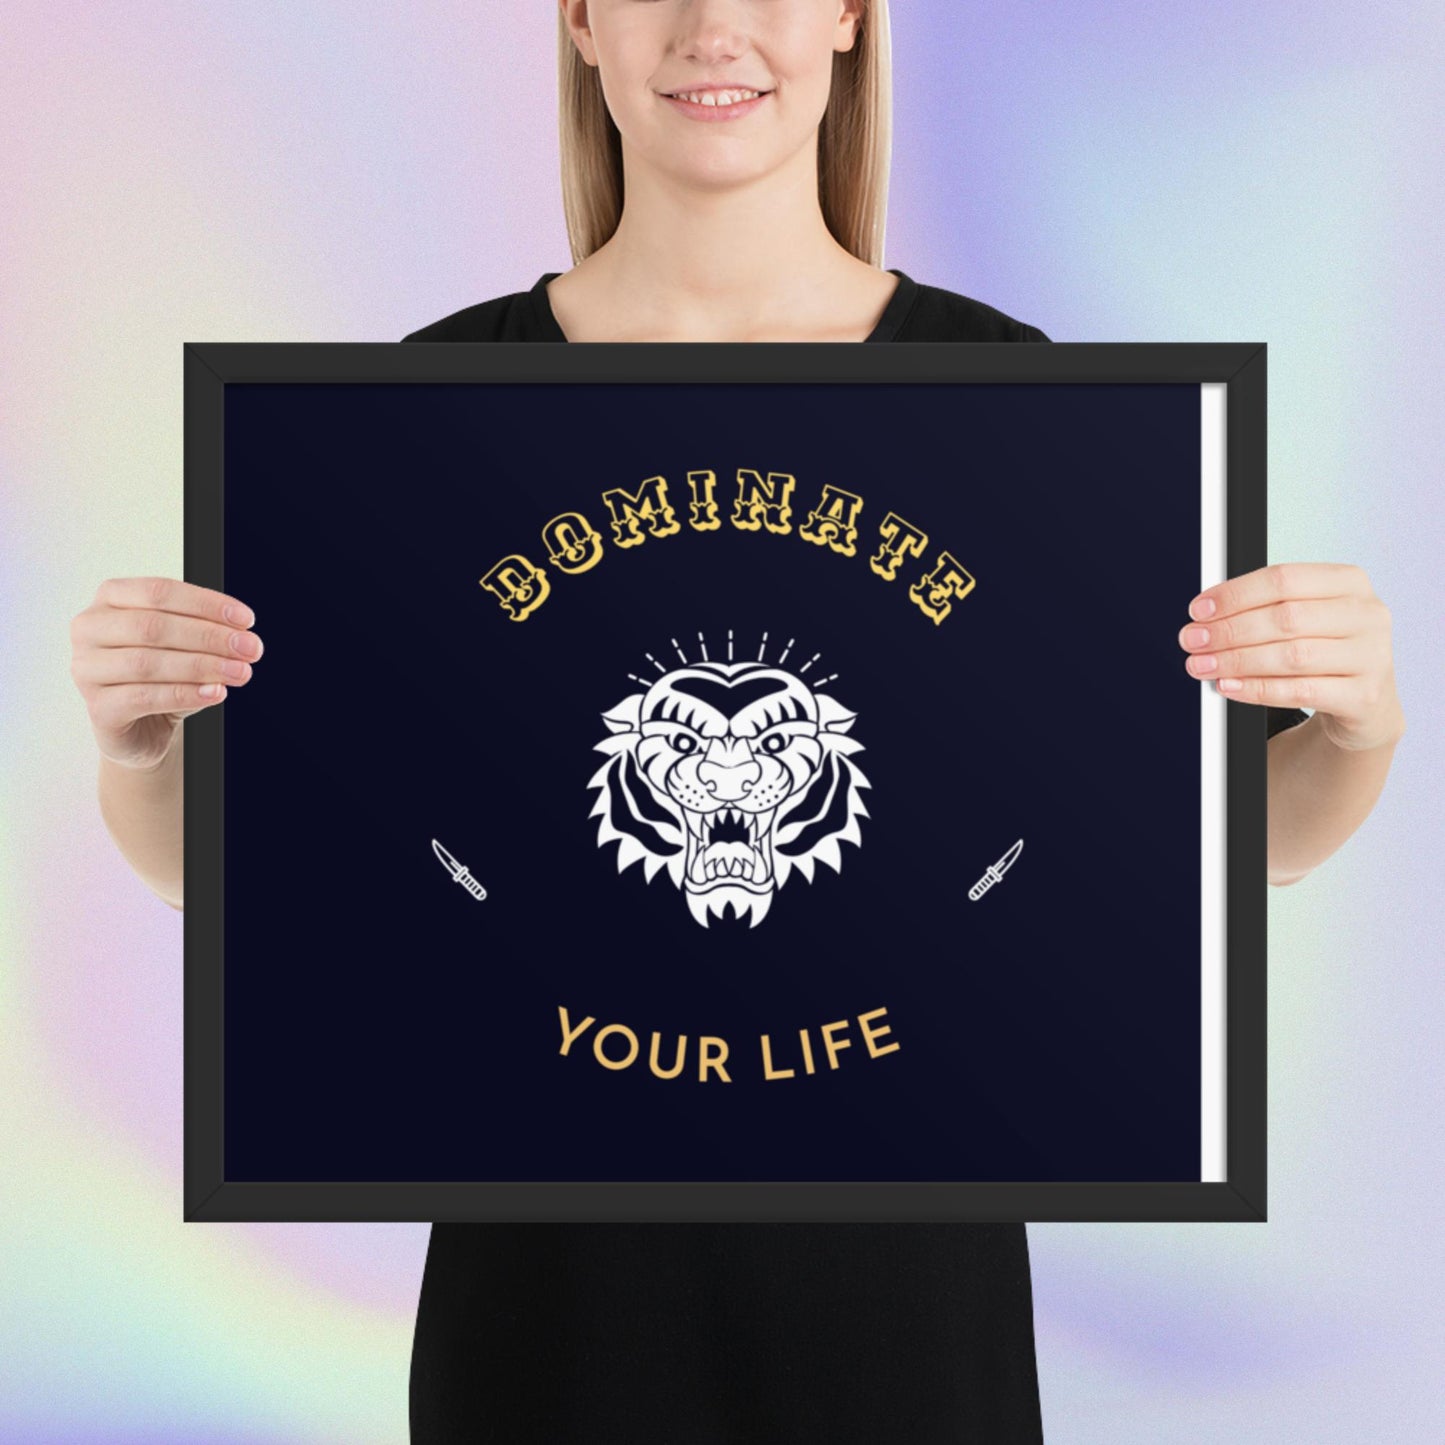 Dominate You Life Framed poster